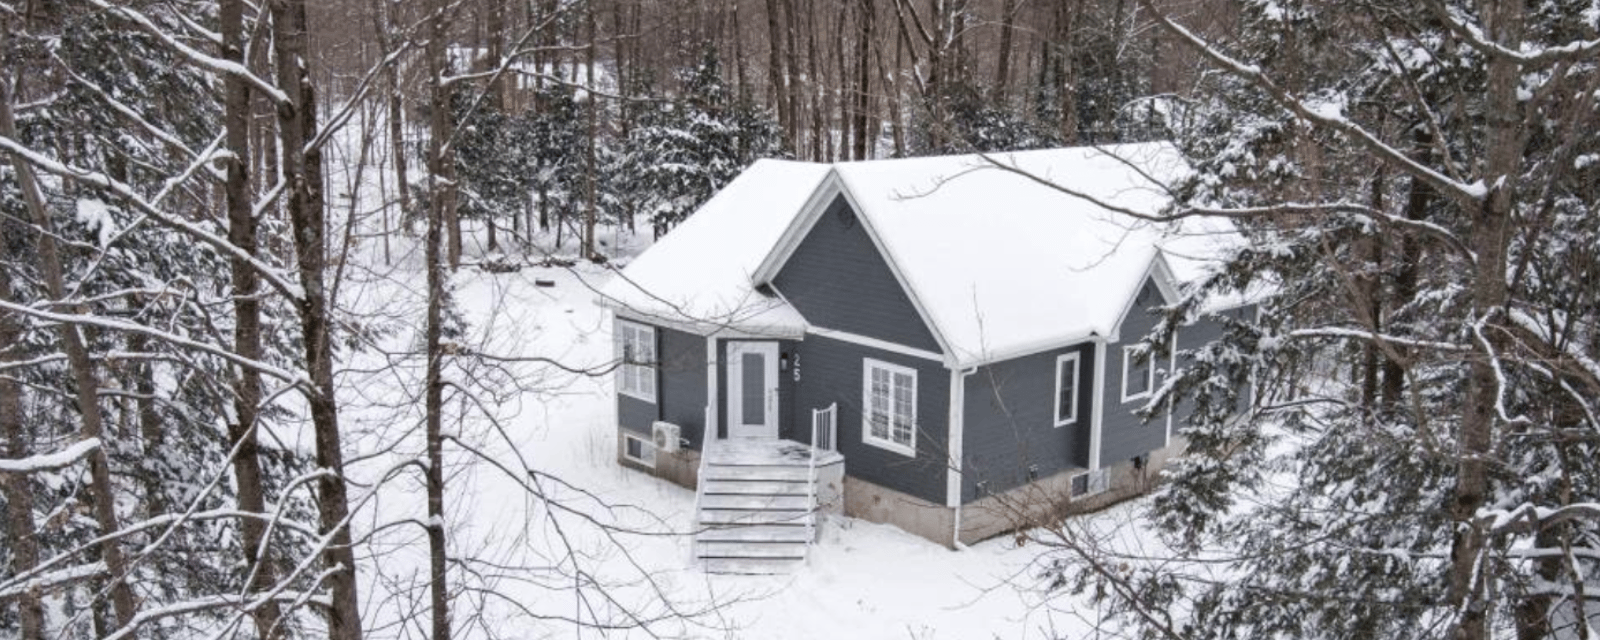 Coquette maison de 5 chambres située près des pistes de ski